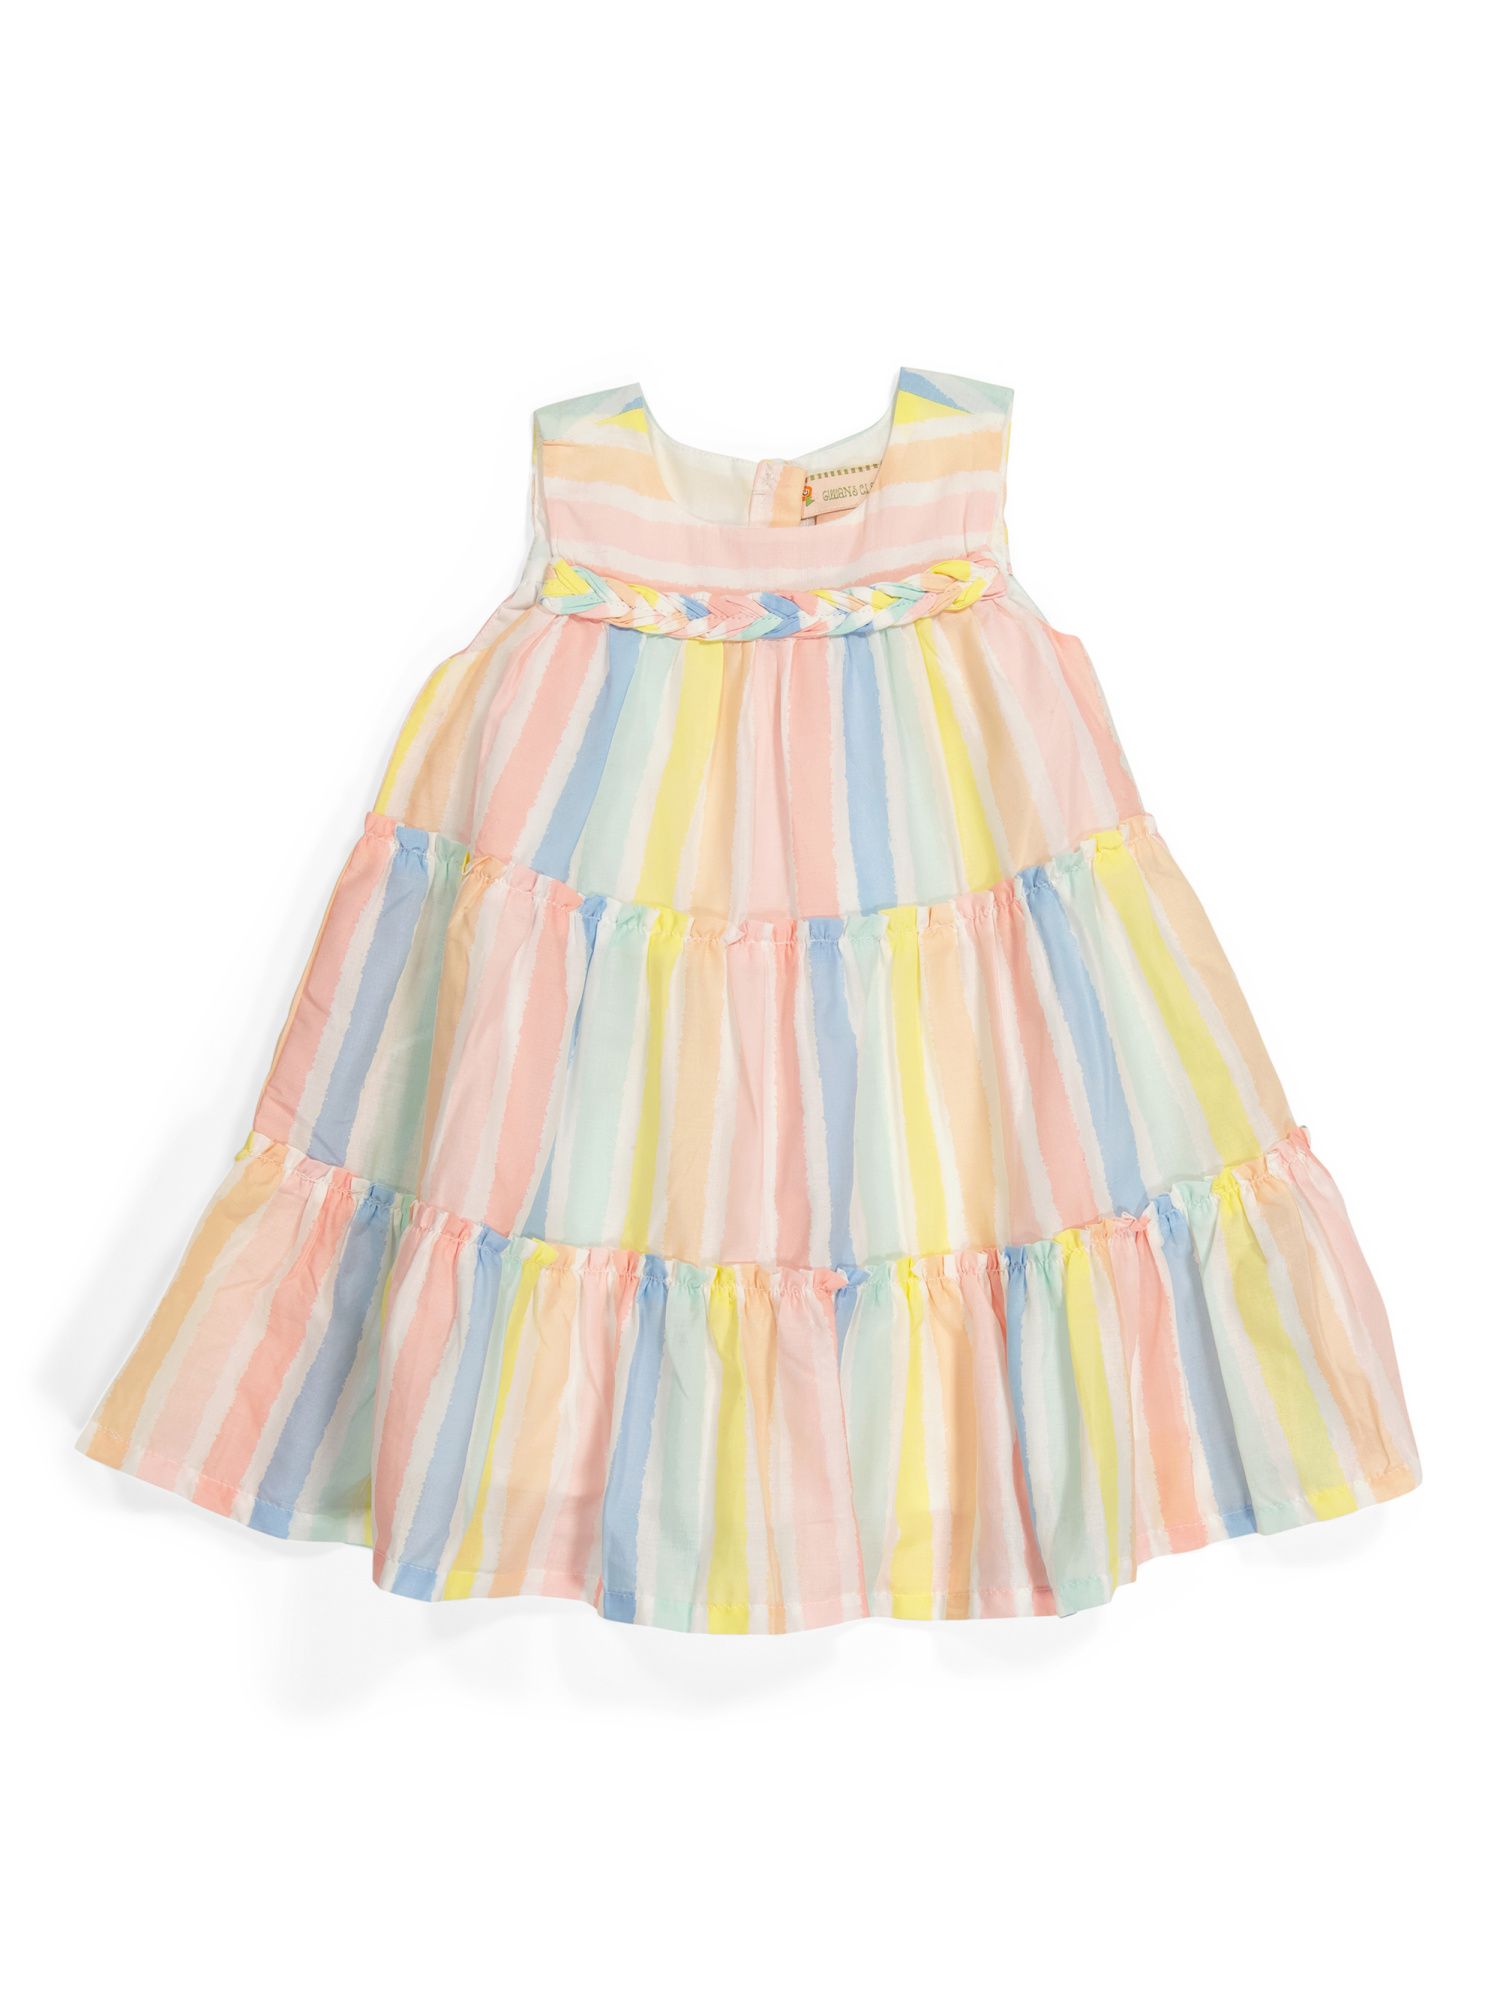 Toddler Girls Rainbow Striped Dress | Toddler Girl Dresses | Marshalls | Marshalls